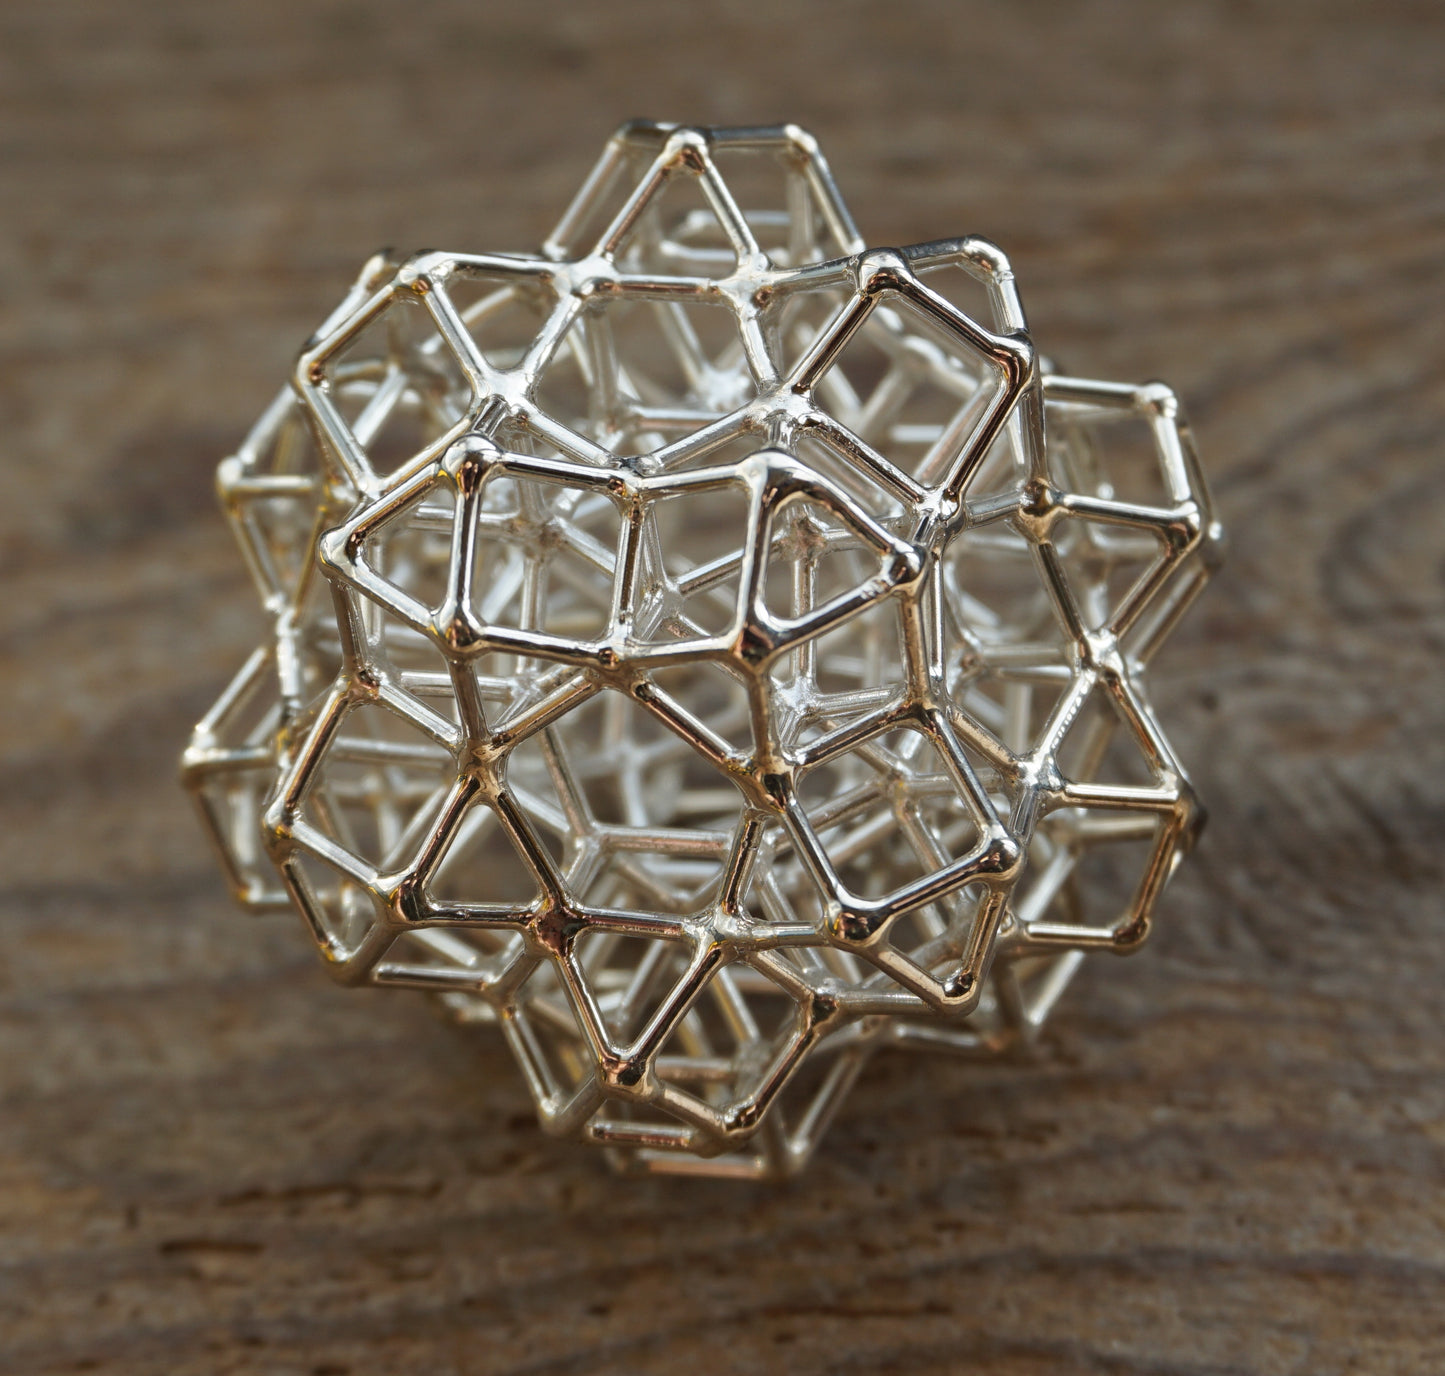 Ref.SZ0040 - Cuboctahedron Fractal